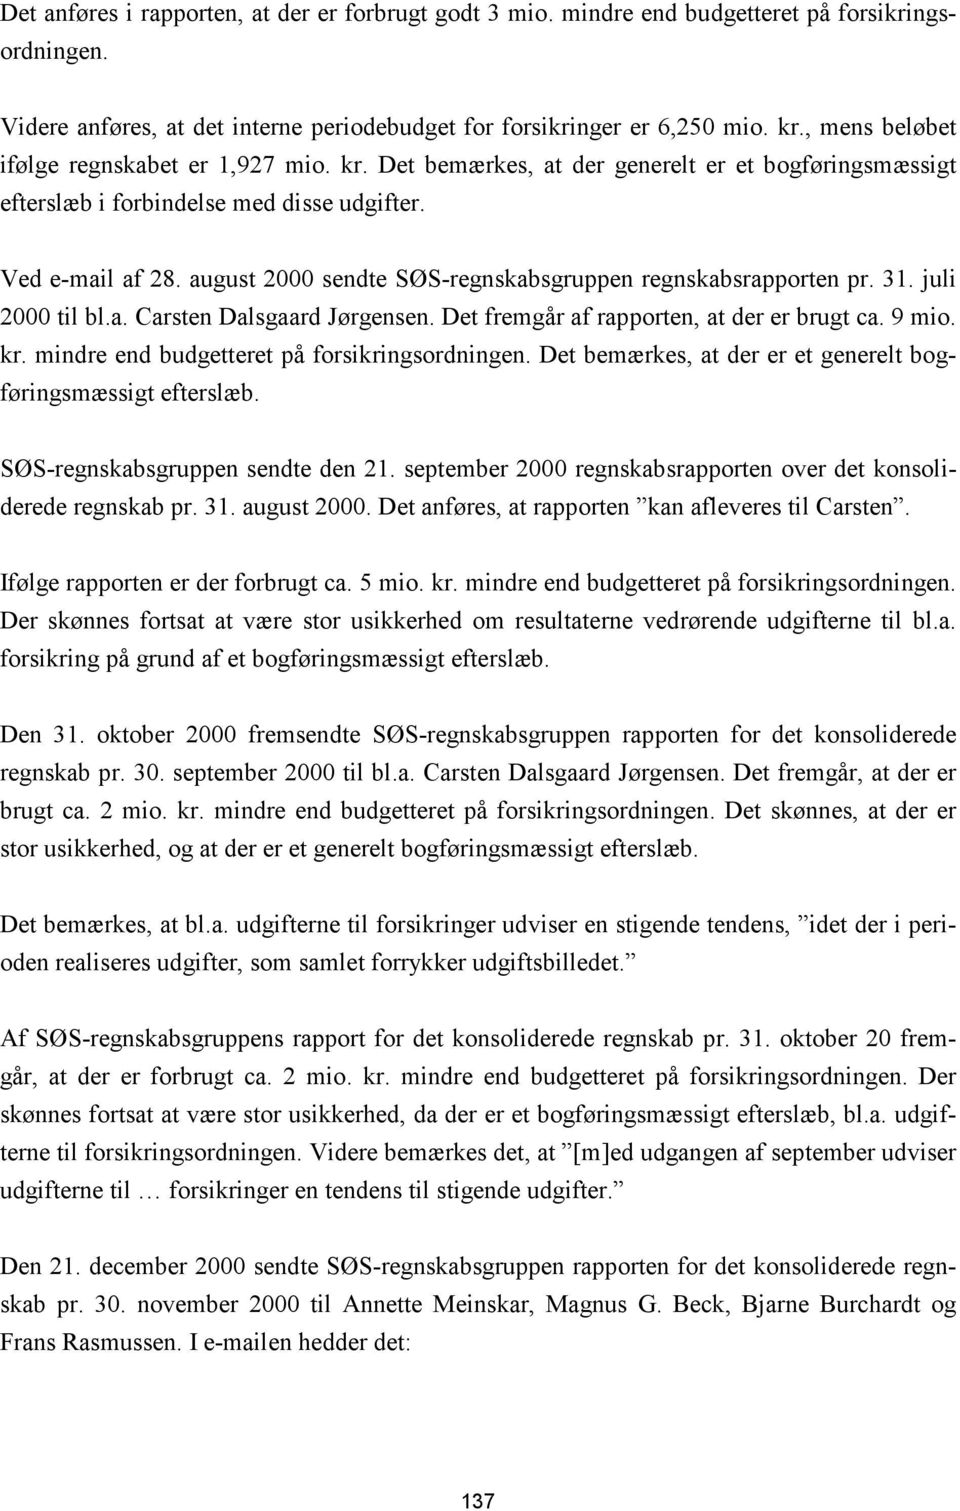 august 2000 sendte SØS-regnskabsgruppen regnskabsrapporten pr. 31. juli 2000 til bl.a. Carsten Dalsgaard Jørgensen. Det fremgår af rapporten, at der er brugt ca. 9 mio. kr.